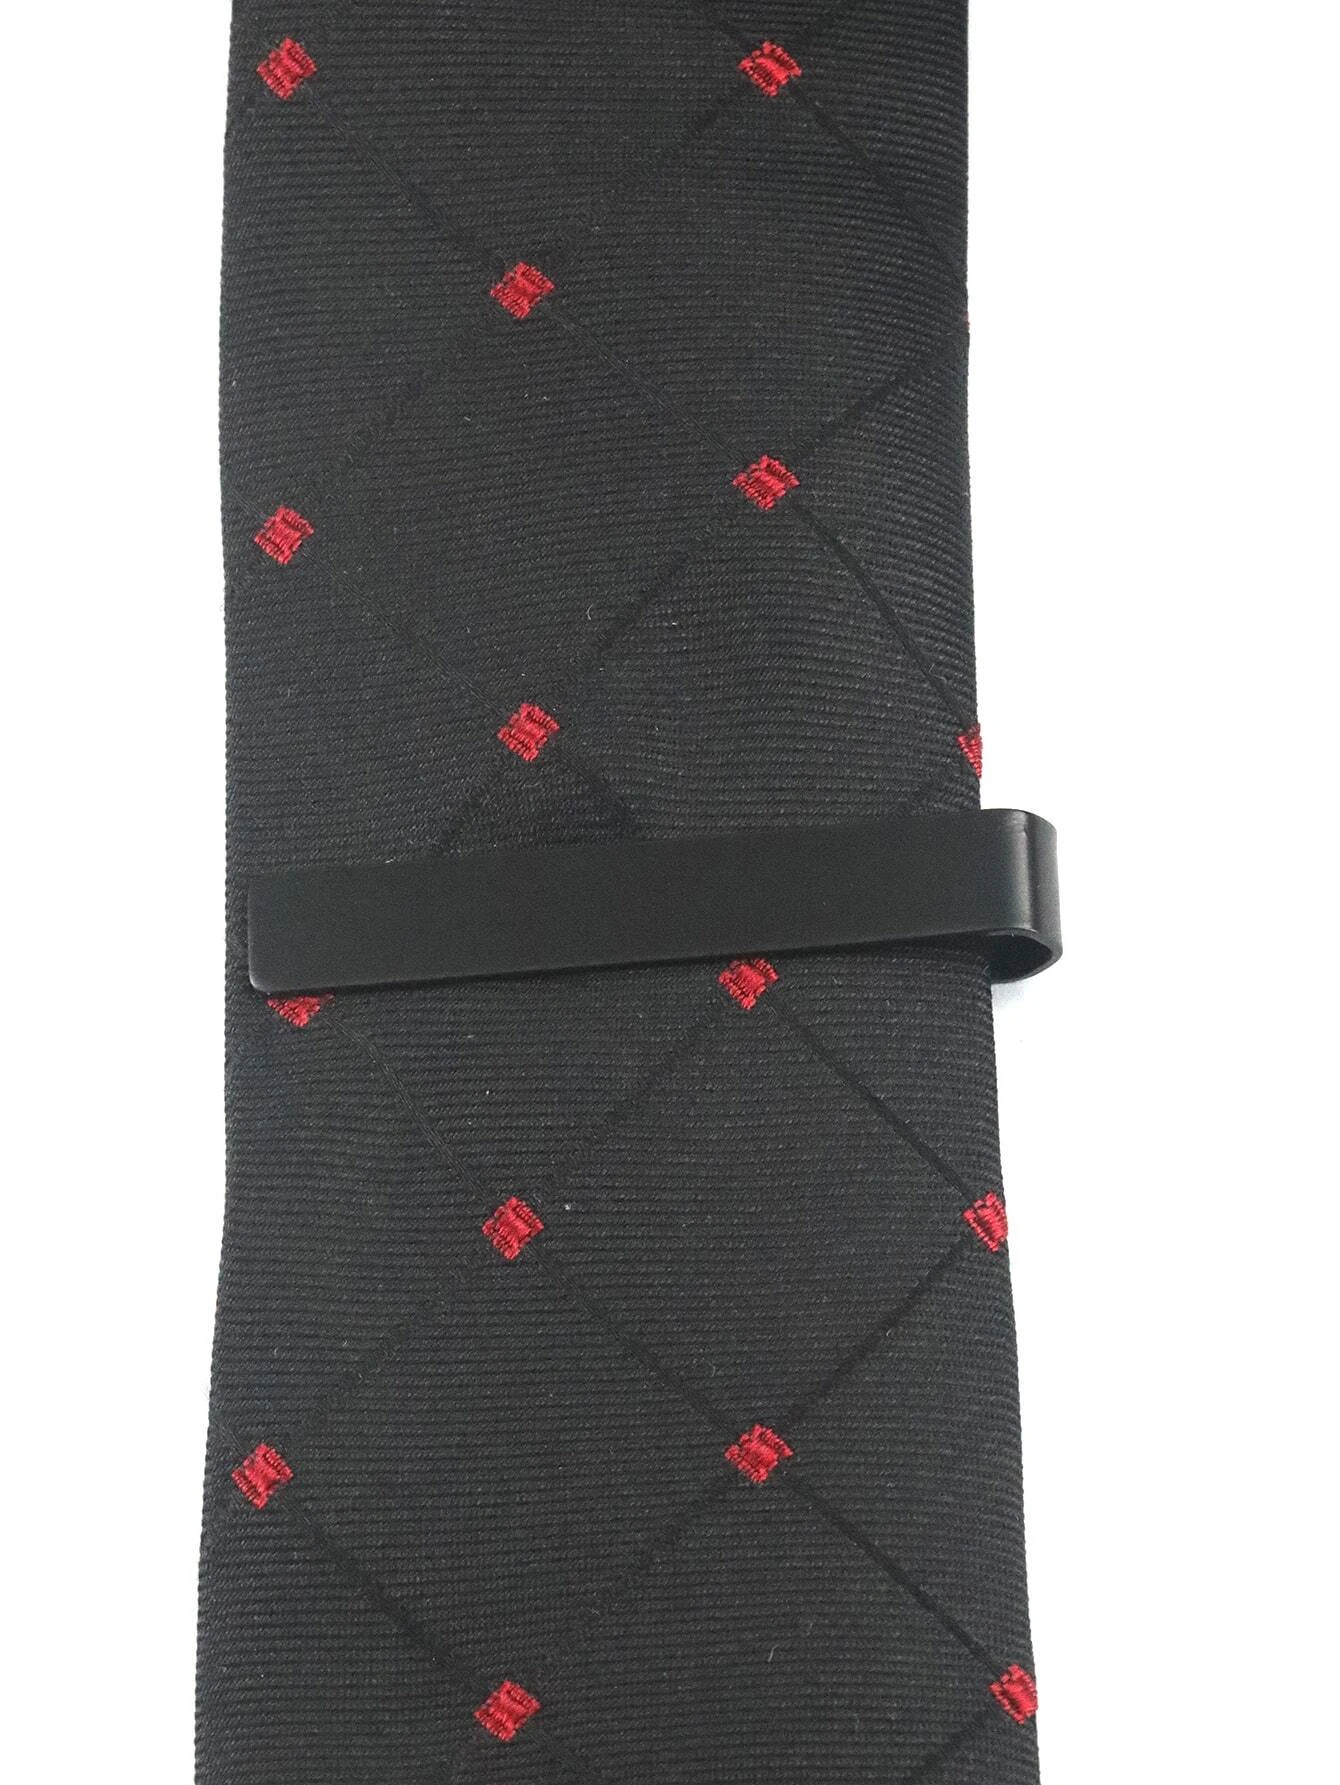 Απλό Κλιπ γραβάτας, ατσάλινο μαύρο